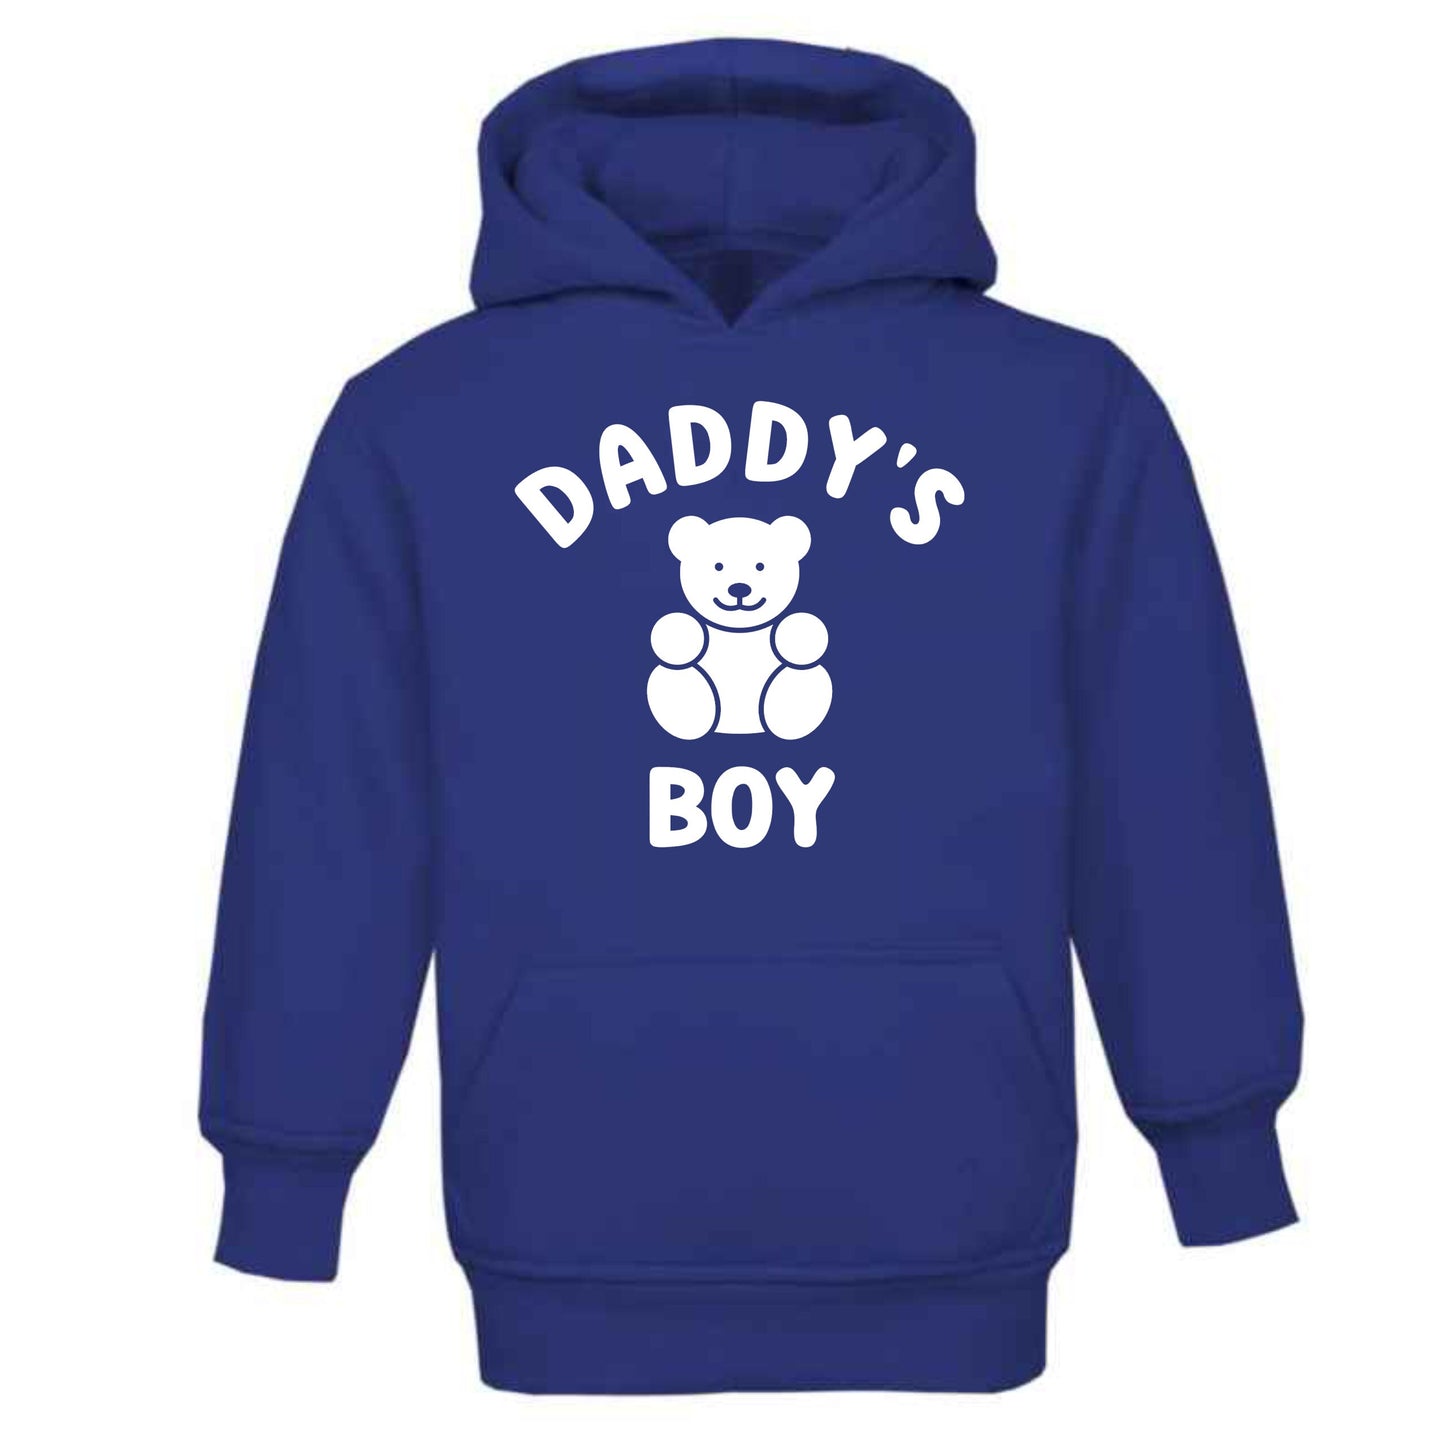 Mummy's / Daddy's / Nanny's Boy hoodie age 3-4 4-5 5-6